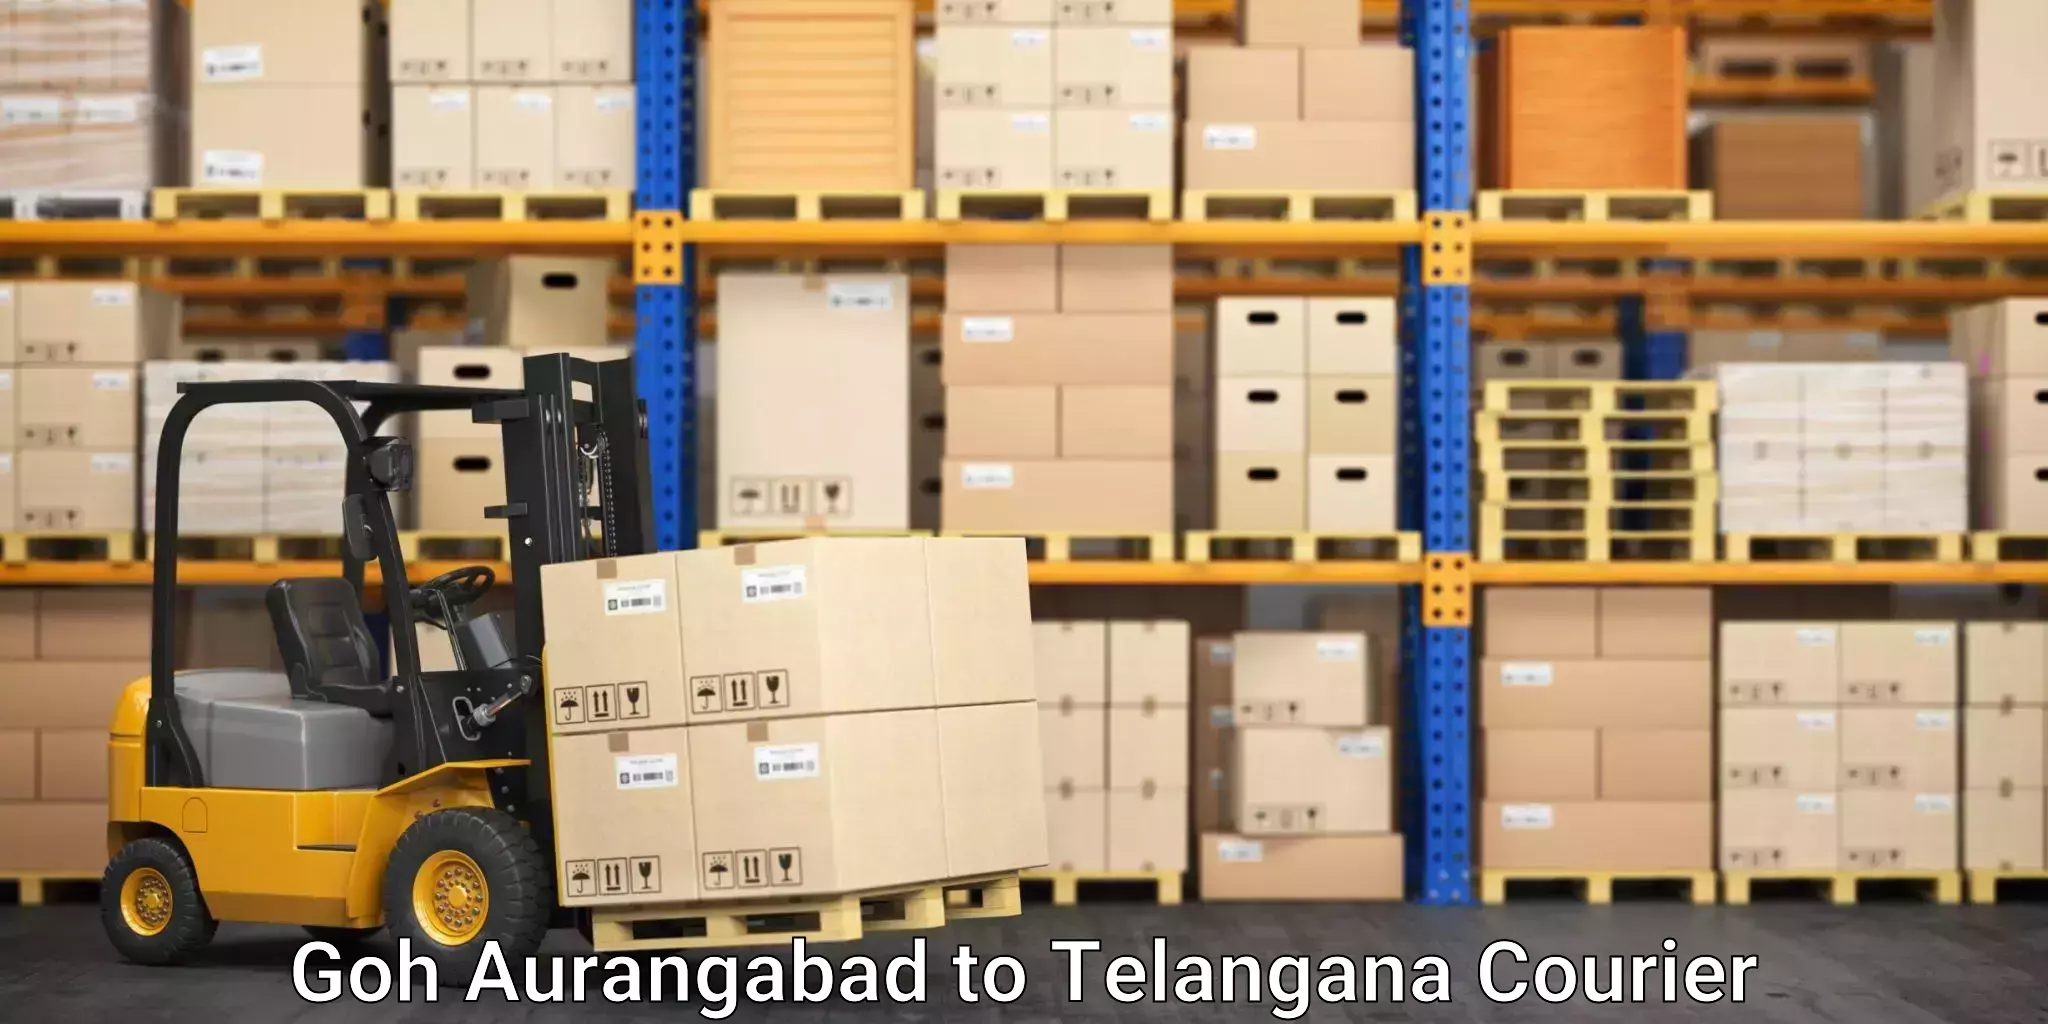 Furniture transport professionals Goh Aurangabad to Eligedu